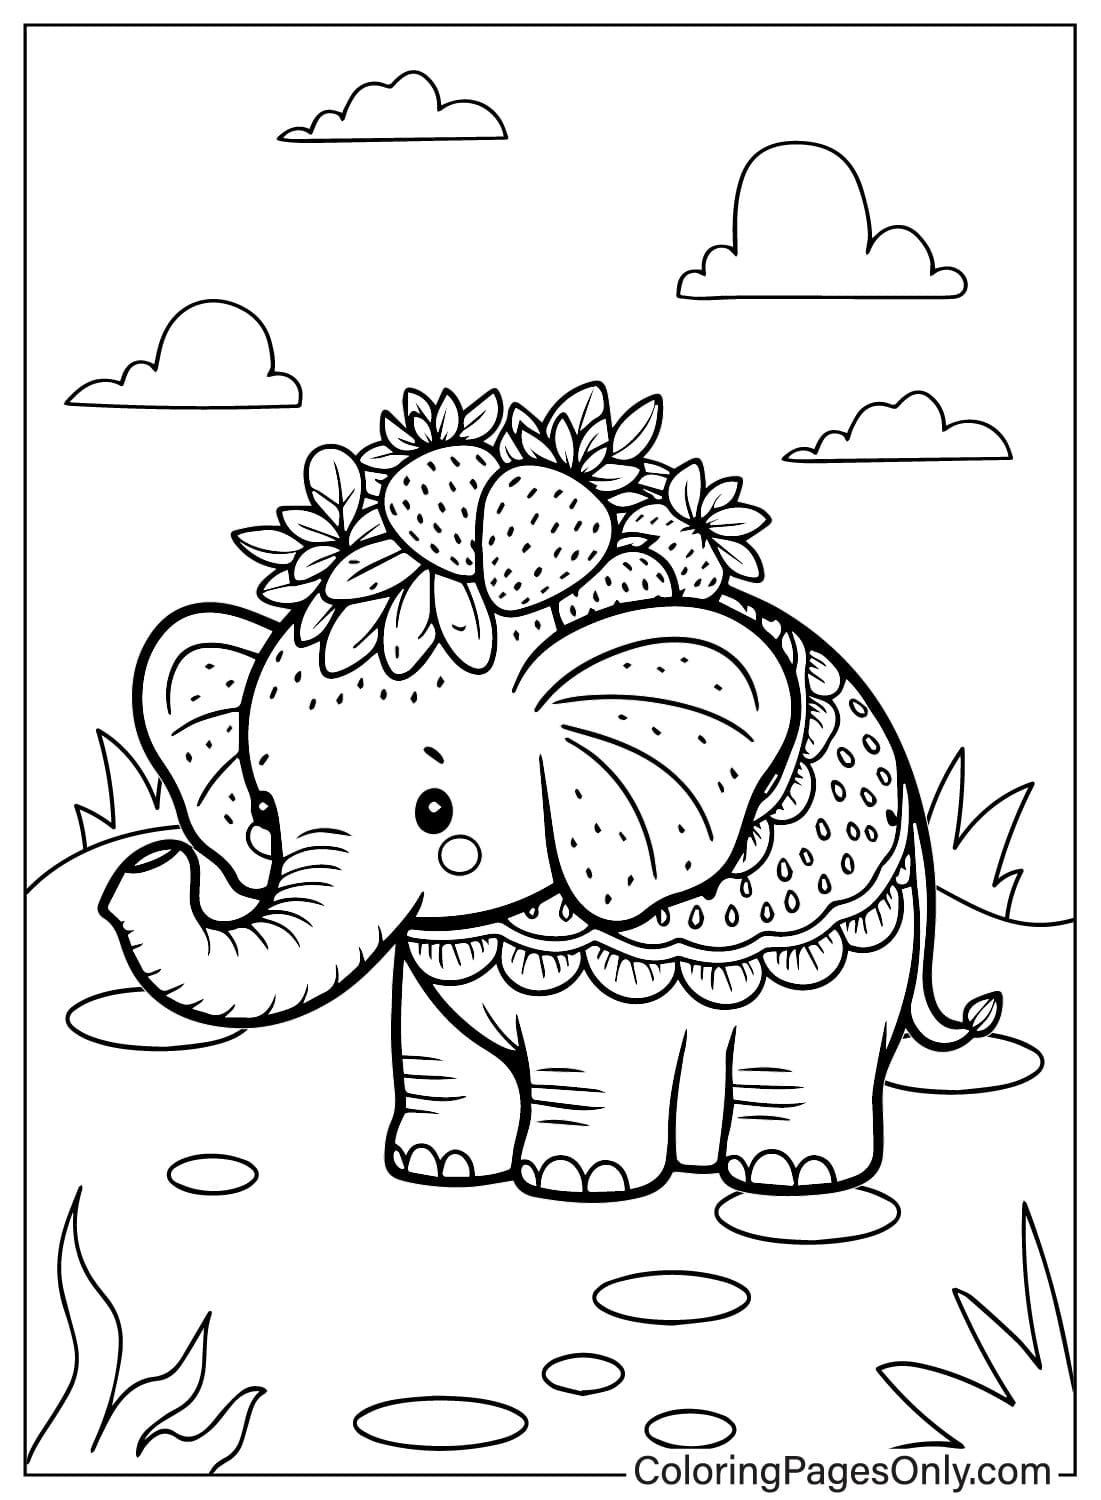 Dibujos para colorear de Elefante de Fresa para imprimir de Elefante de Fresa